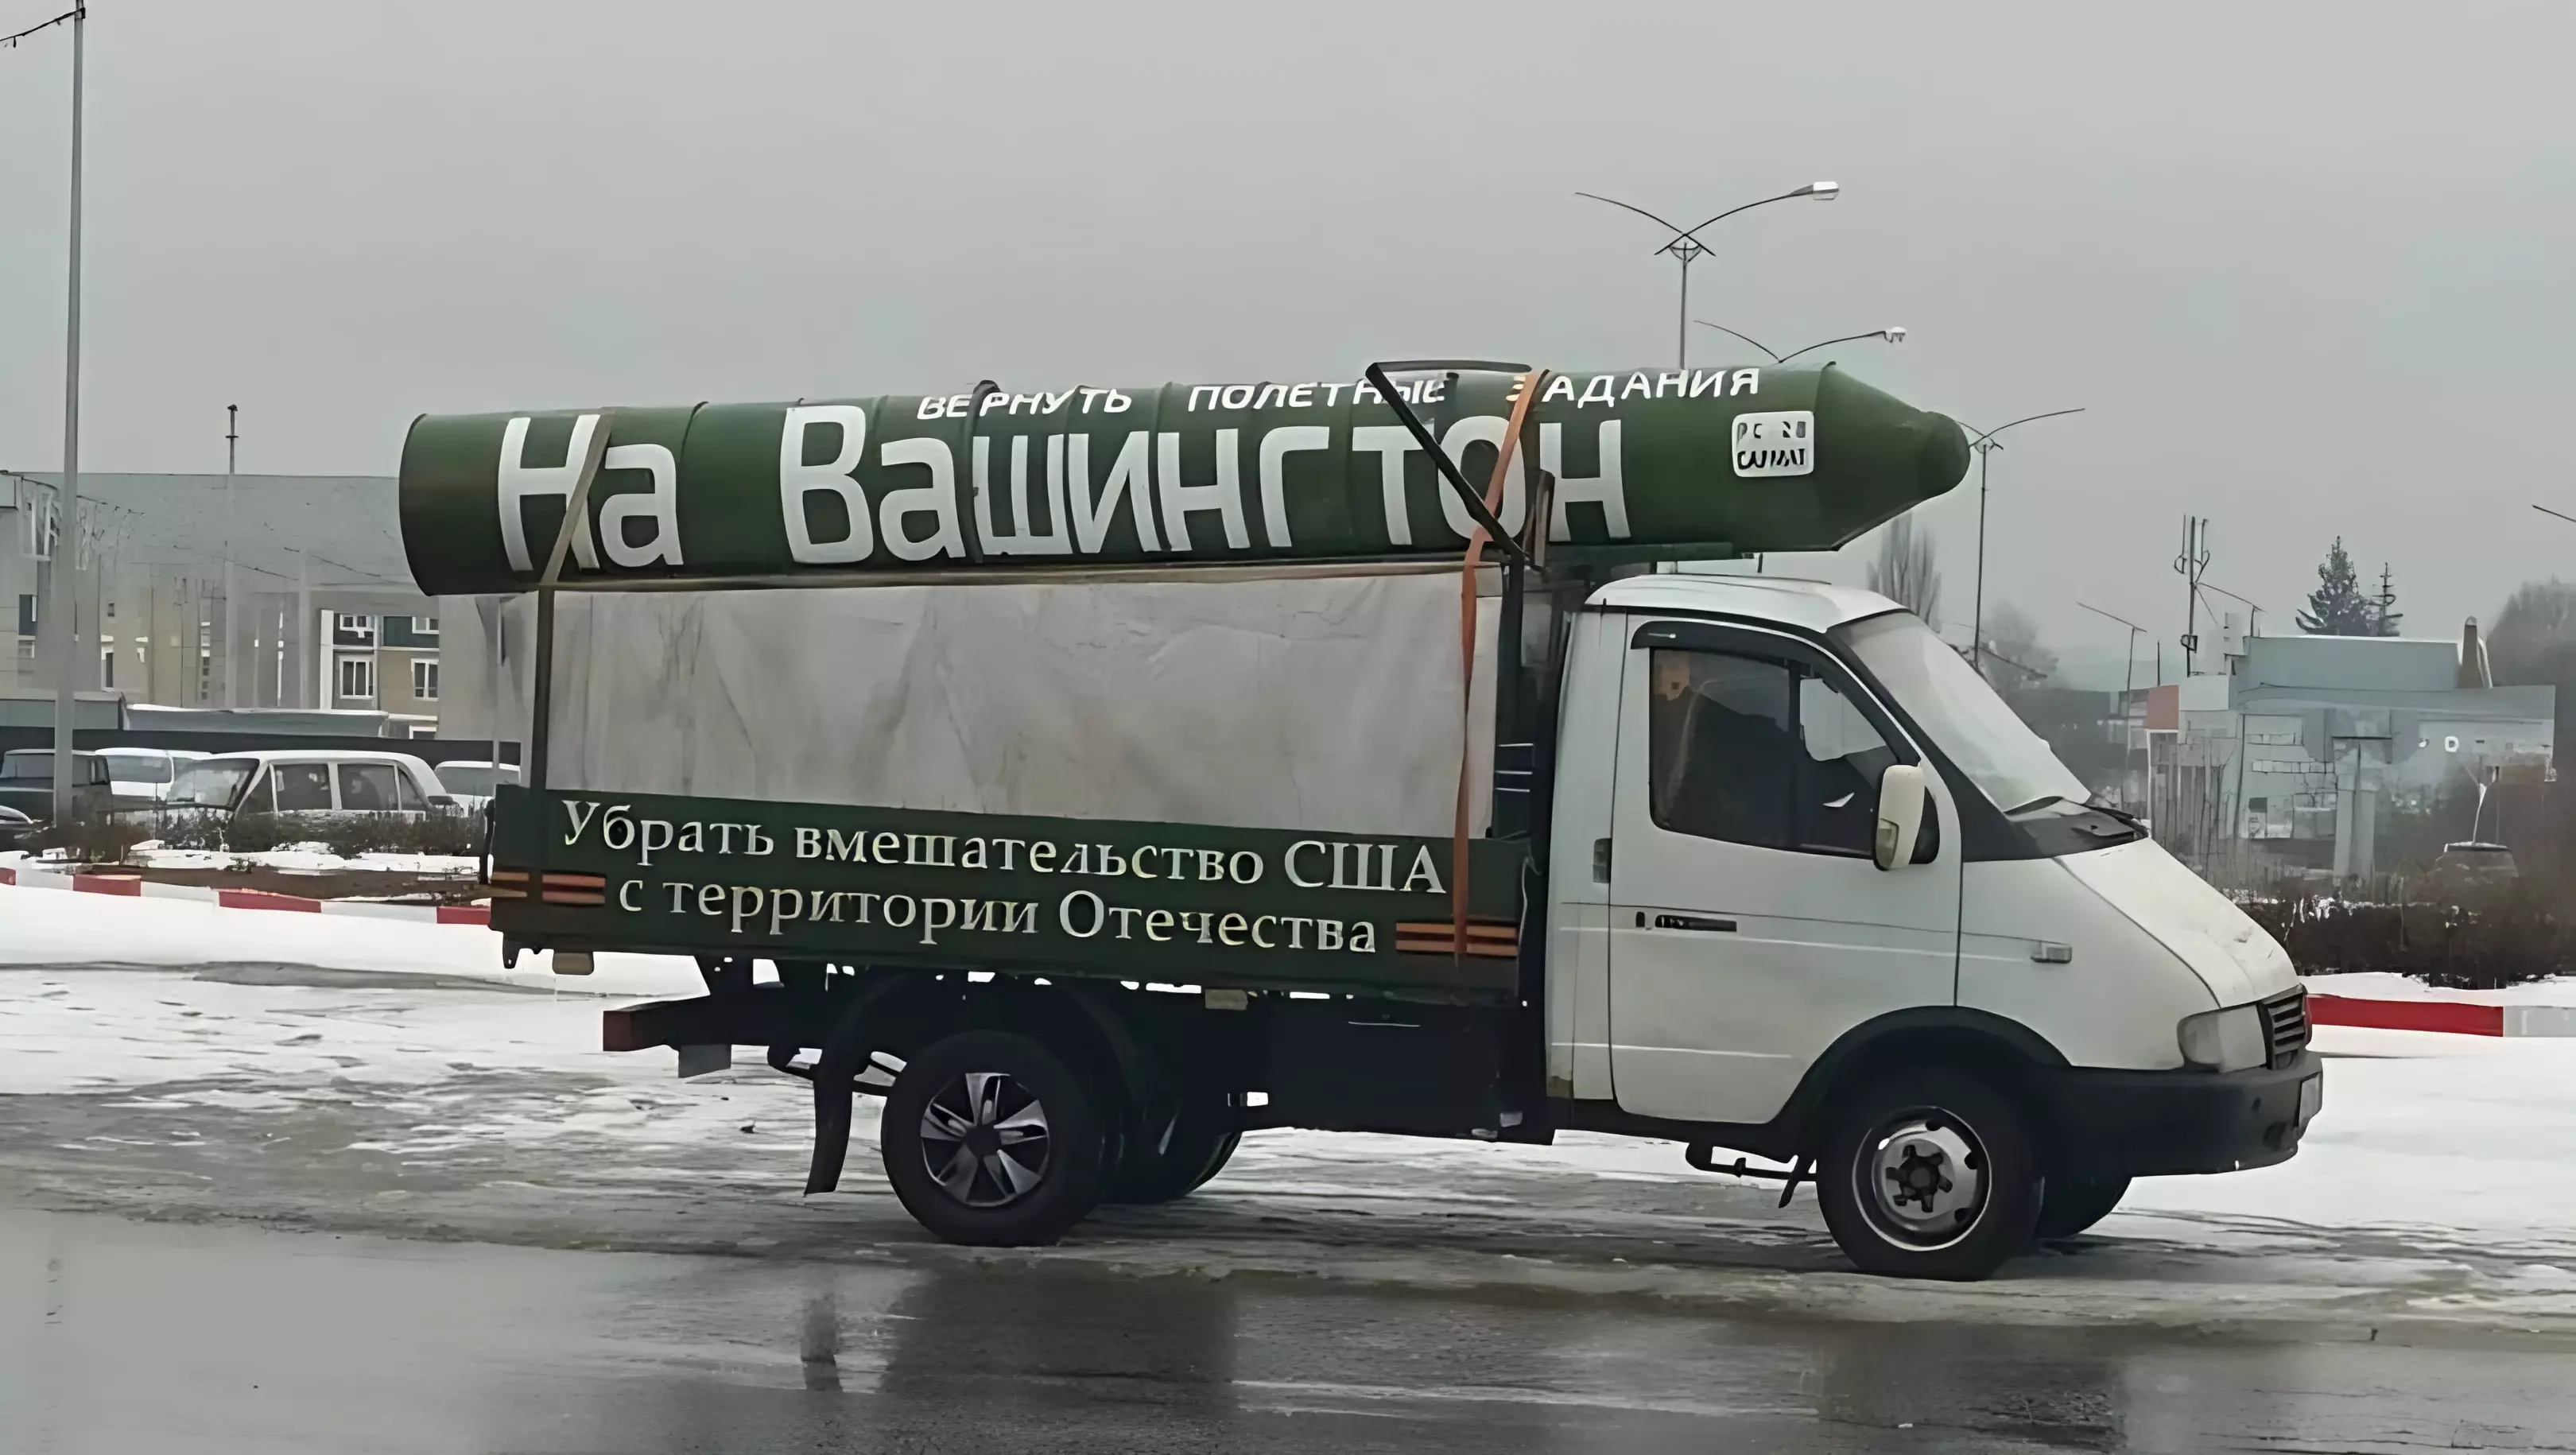 Полиция Белгорода остановила машину с бутафорской ракетой «на Вашинтгон»